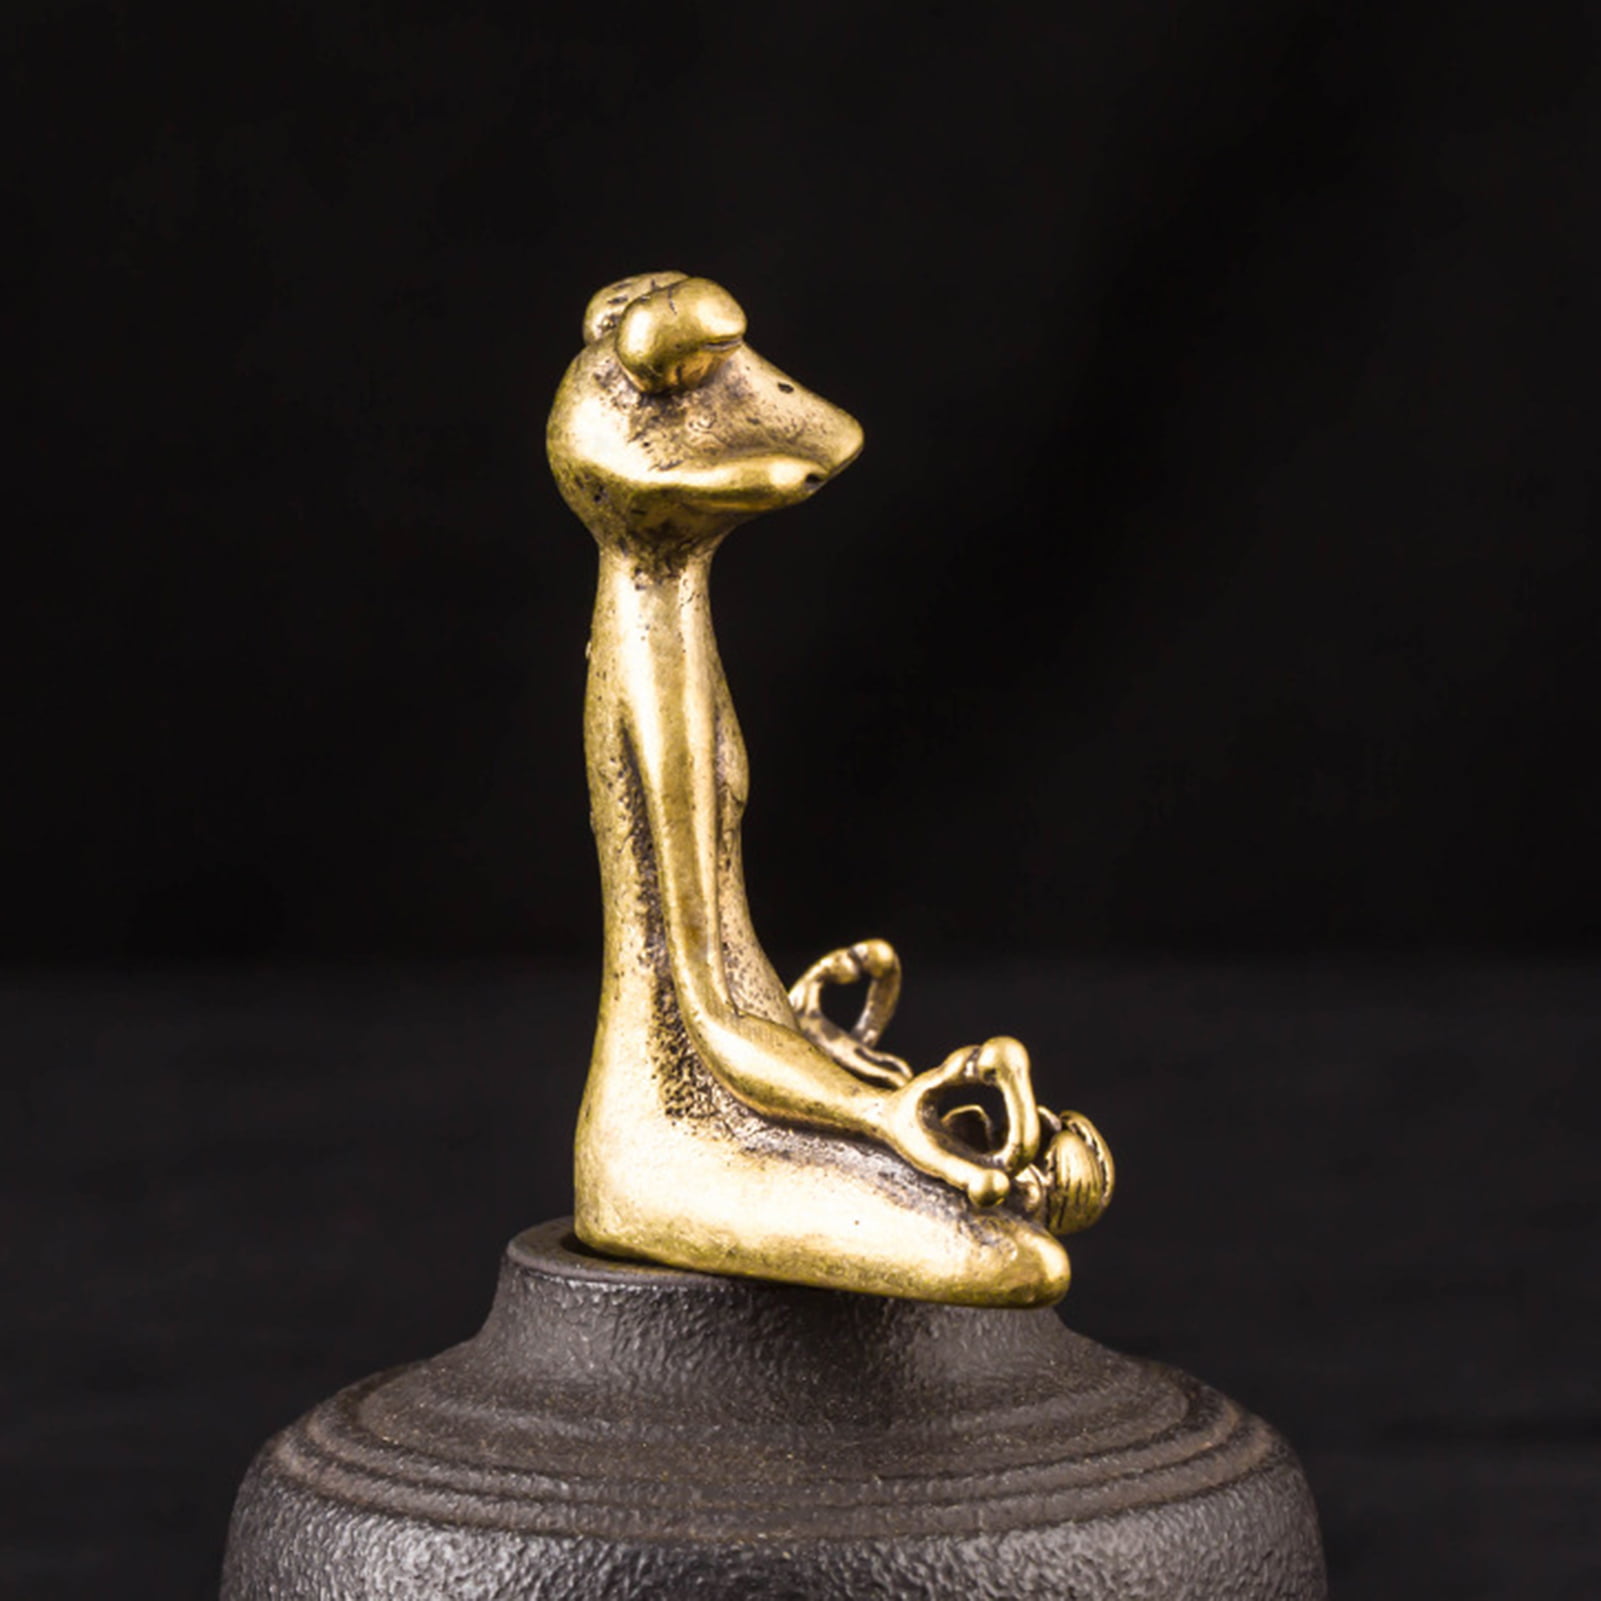 Antique Brass Meditation Frog Incense Cone Holder Plate Sculpture Statue Burner 